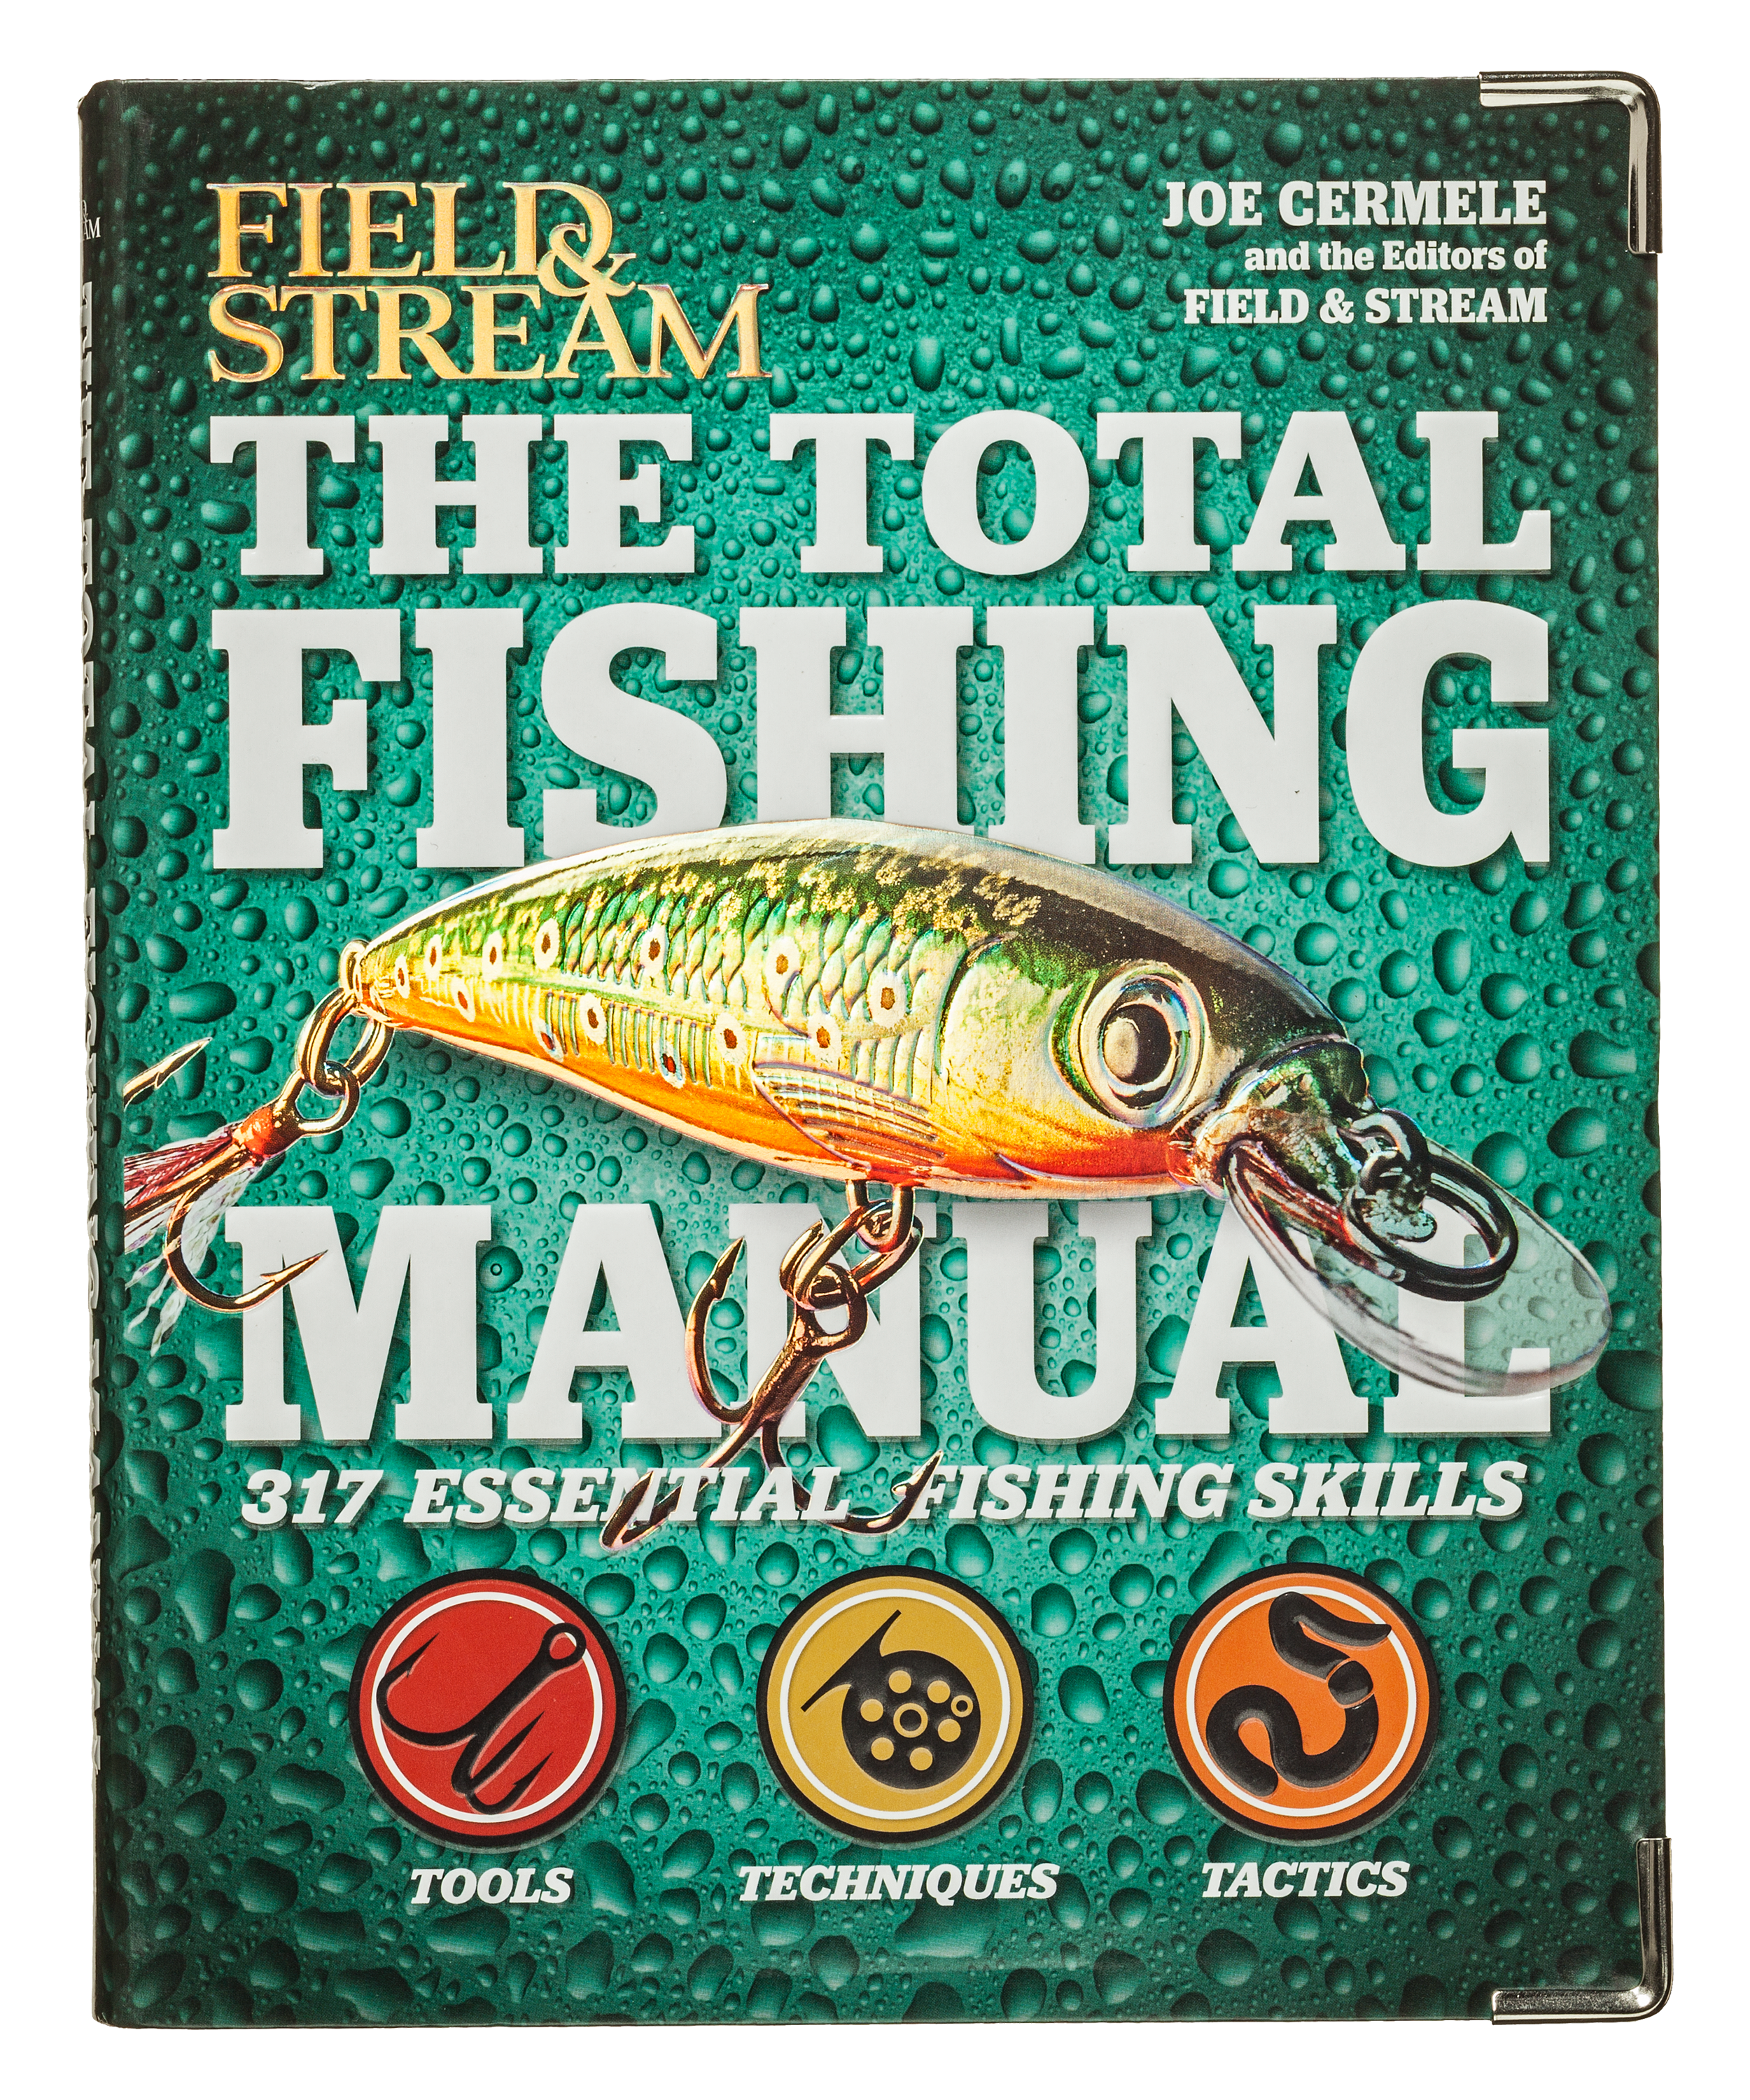  The Total Fishing Manual: 317 Essential Fishing Skills